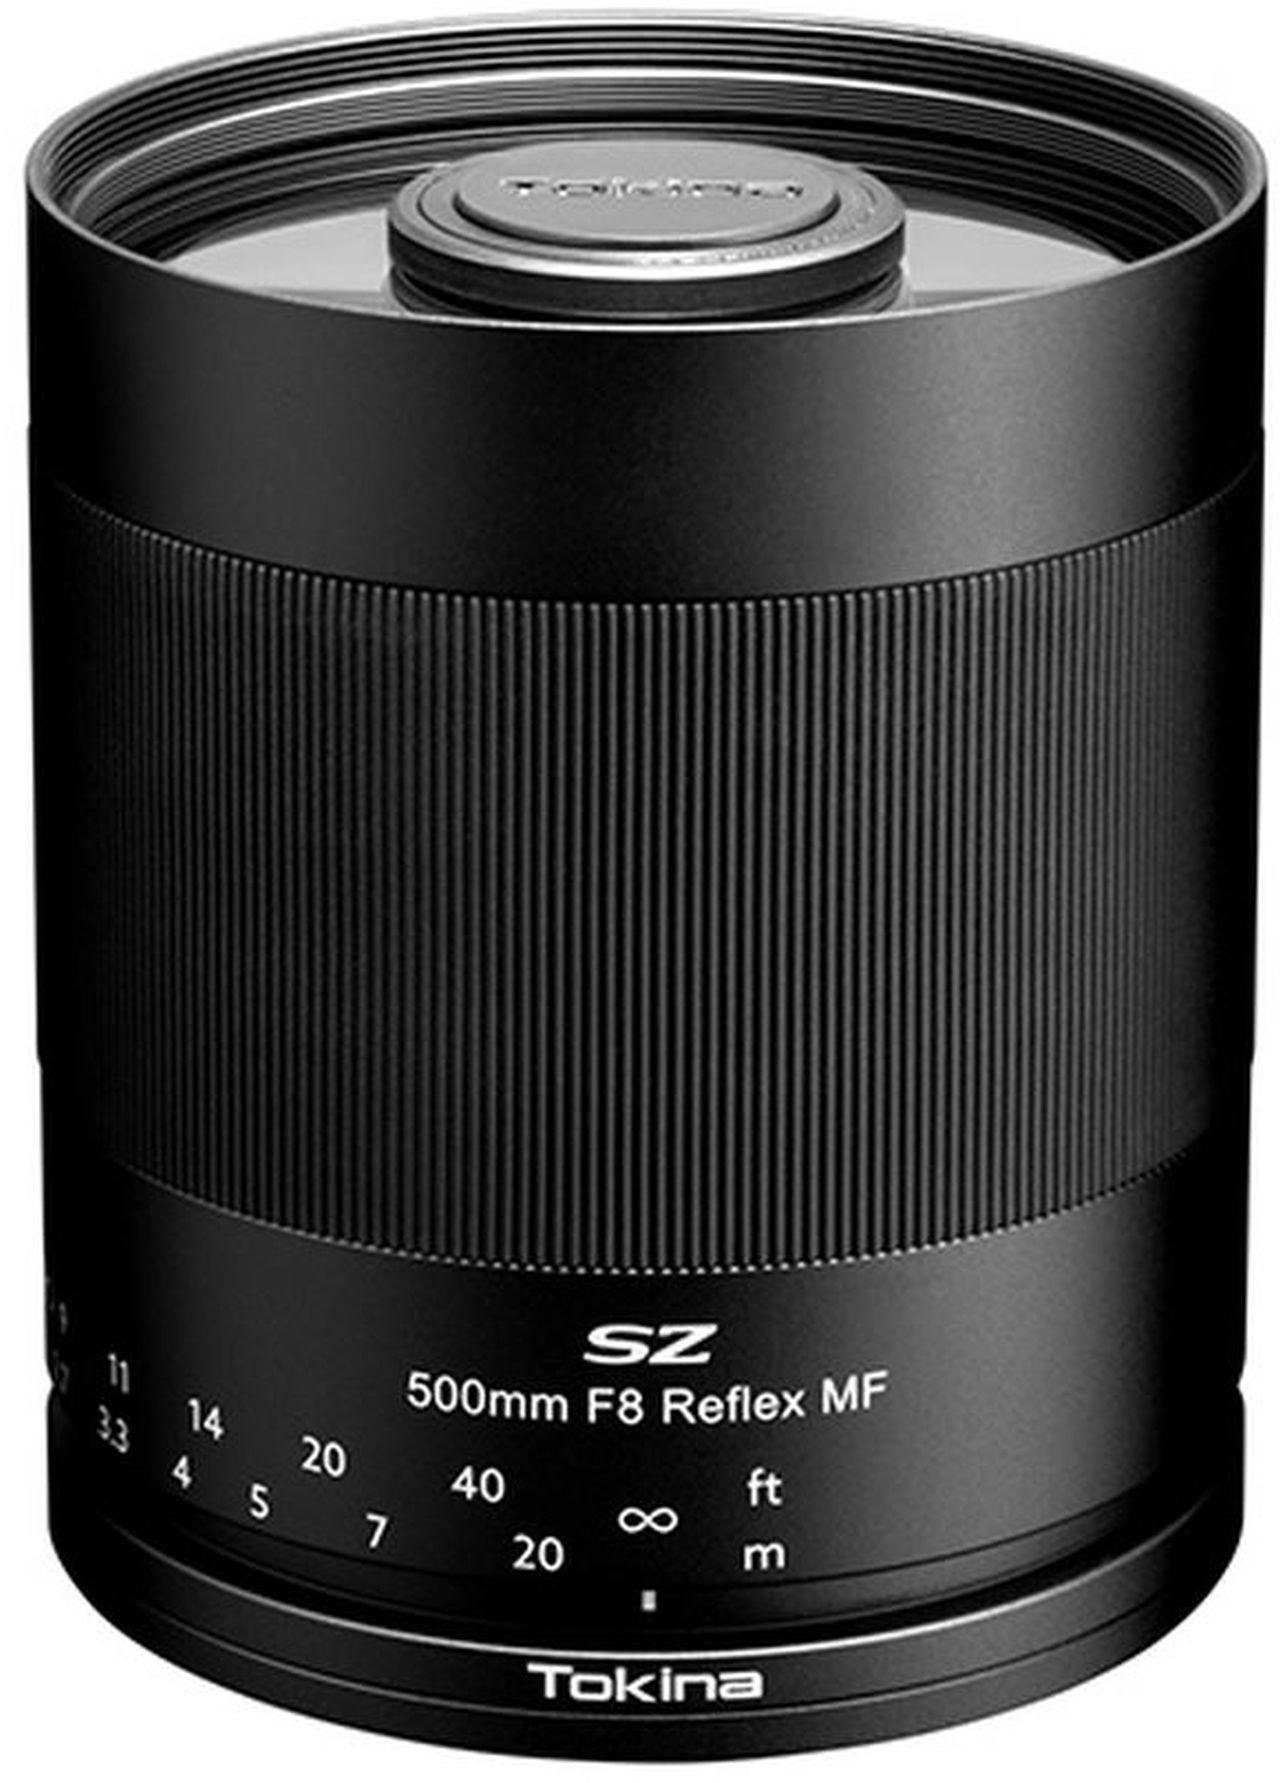 E Objektiv MF Reflex 500mm Tokina Sony SZ F8